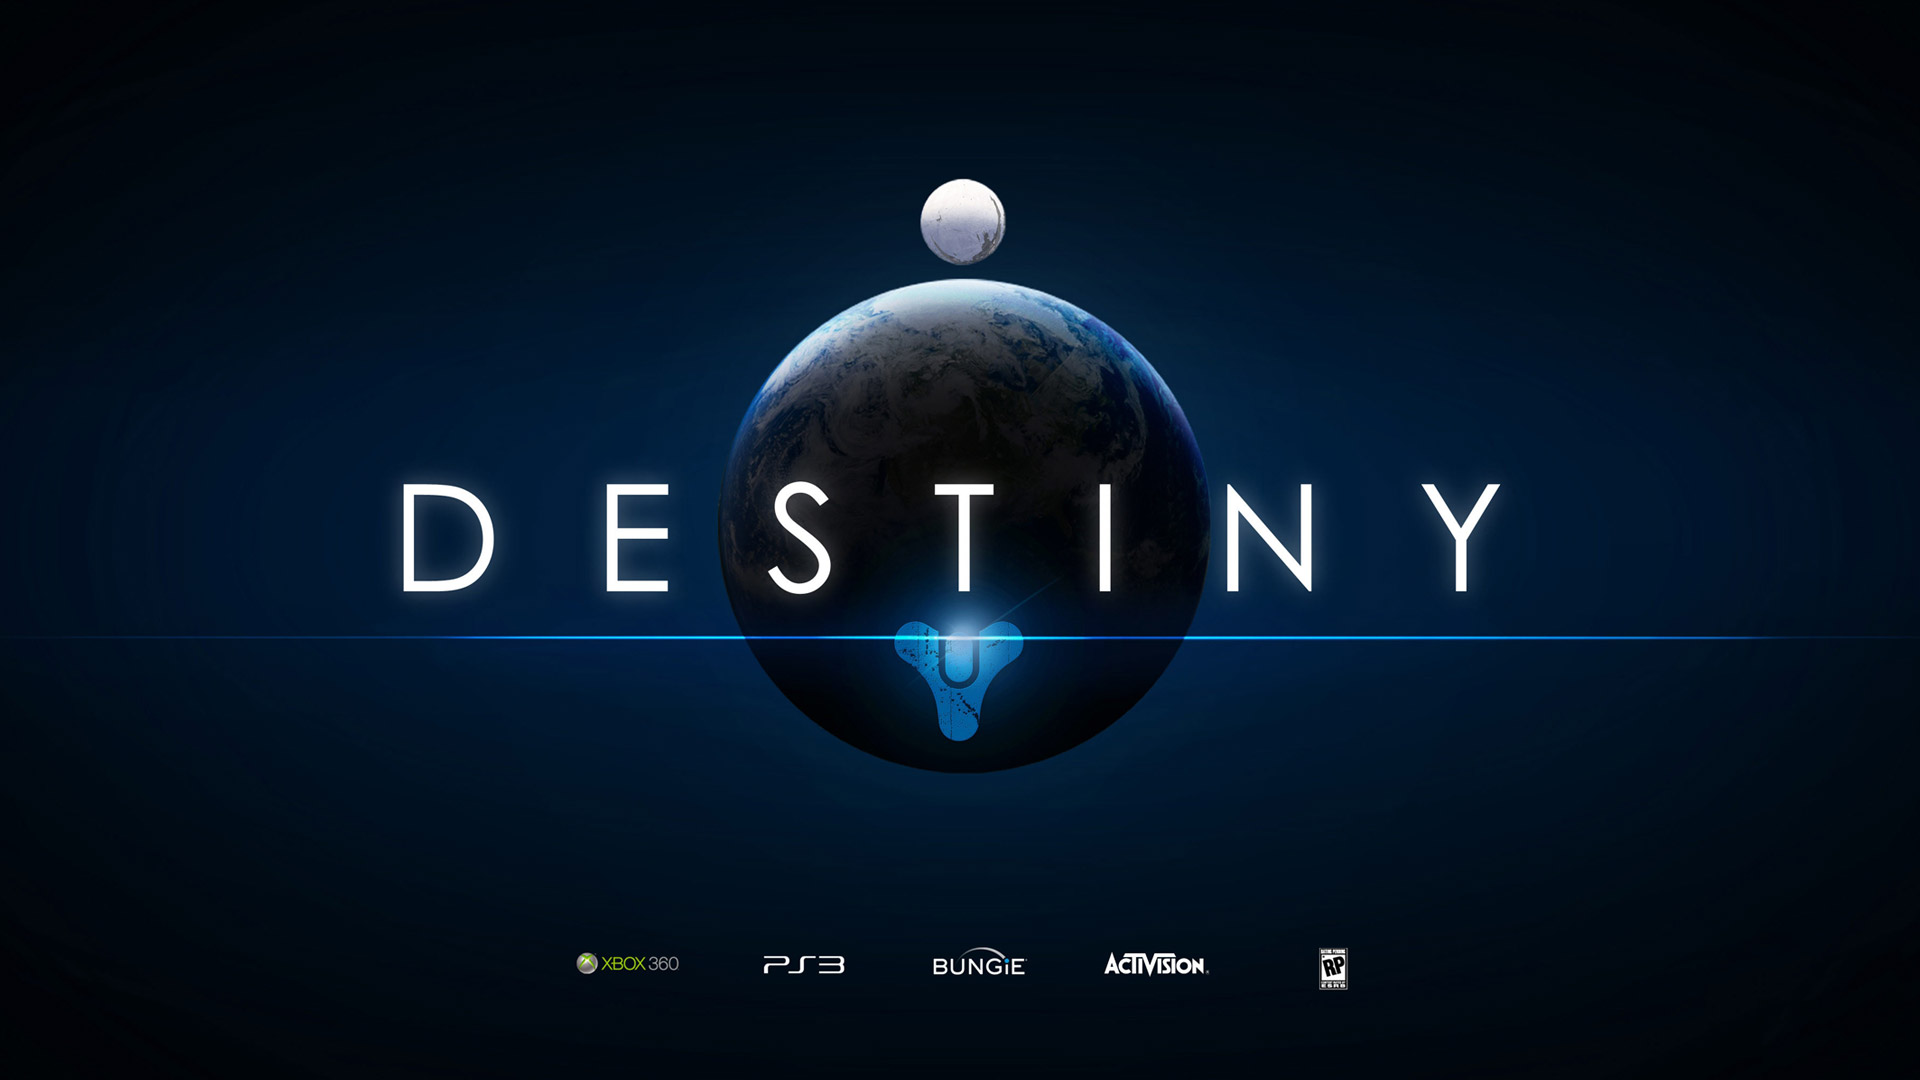 Destiny Logo 1080p Wallpaper Destiny Games Wallpapers Res 1920x1080